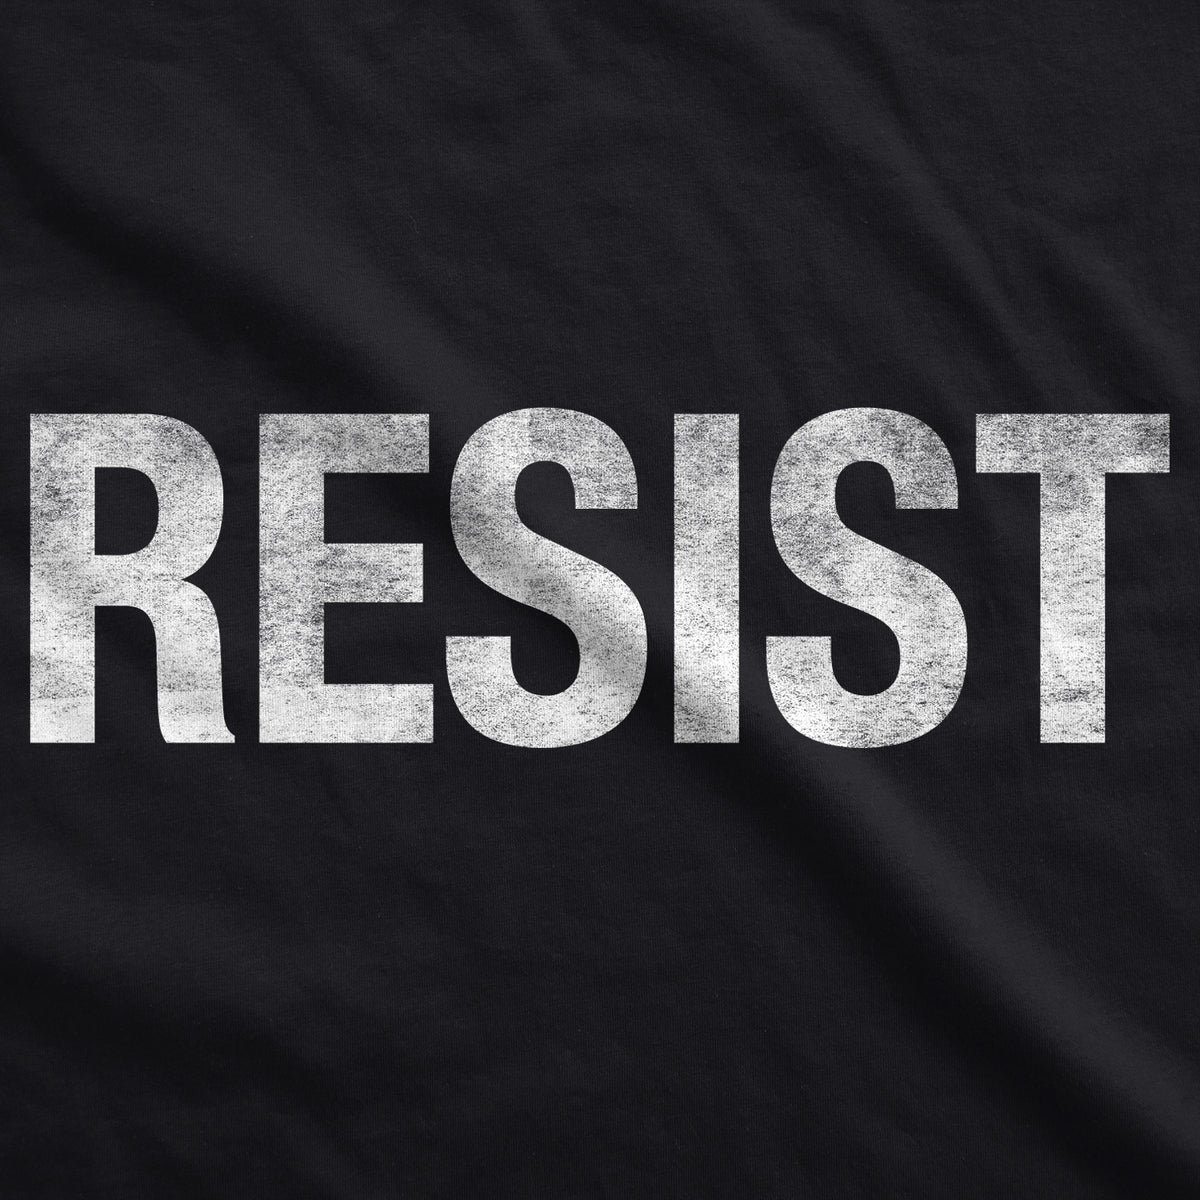 RESIST Men&#39;s T Shirt